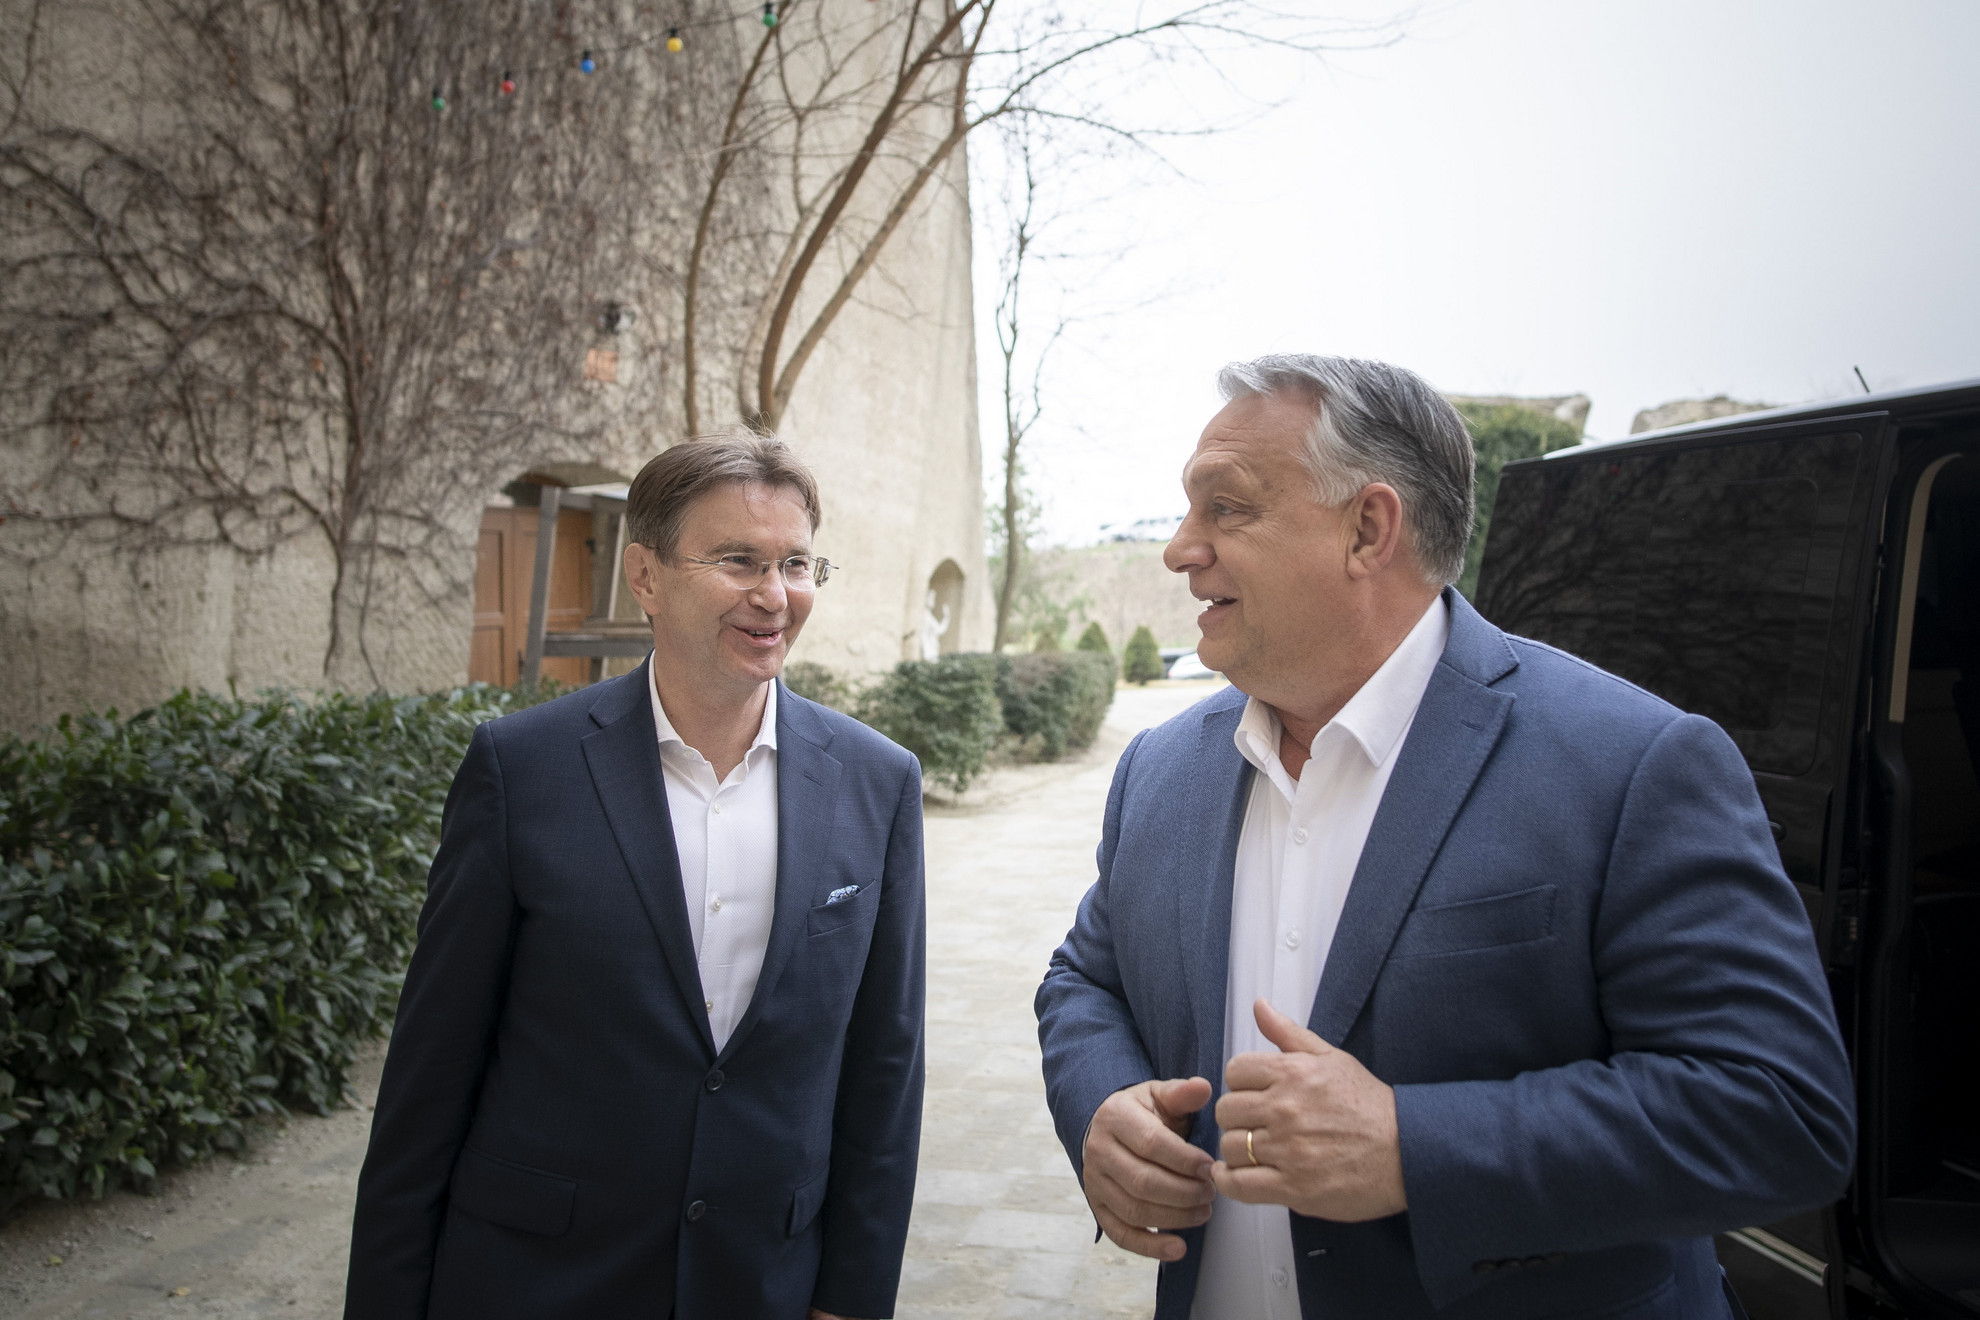 A Miniszterelnöki Sajtóiroda által közreadott képen az Egerbe látogató Orbán Viktor miniszterelnököt, a Fidesz elnökét (j) köszönti Pajtók Gábor (Fidesz-KDNP), Heves megyei kormánymegbízott, a megye 1. számú, egri székhelyű választókerületének országgyűlési képviselőjelöltje (b)